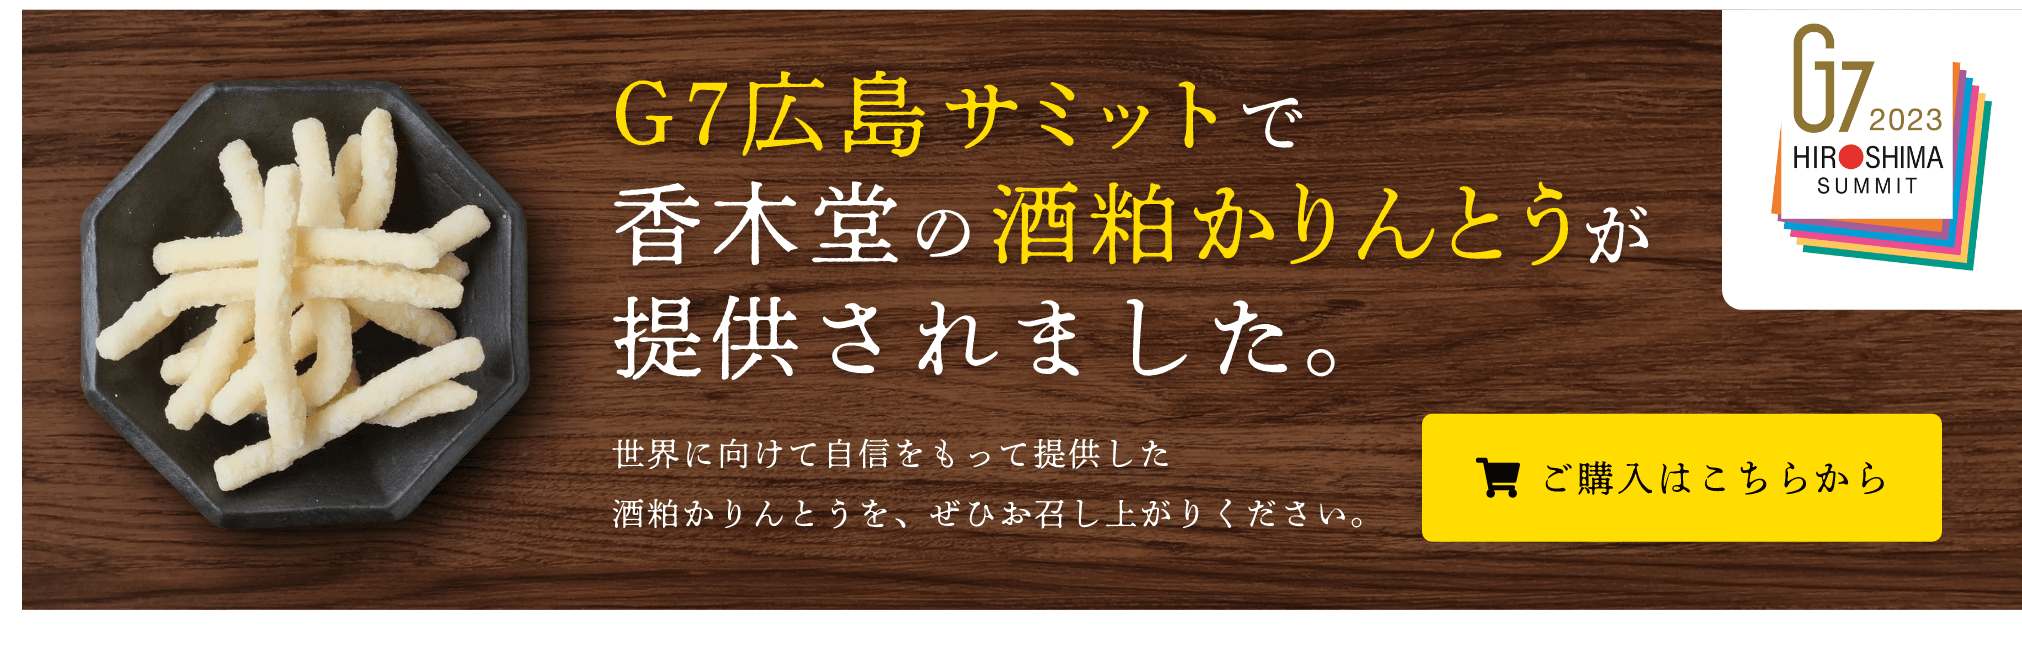 G7広島サミット2023で香木堂の酒粕かりんとうが提供されました。